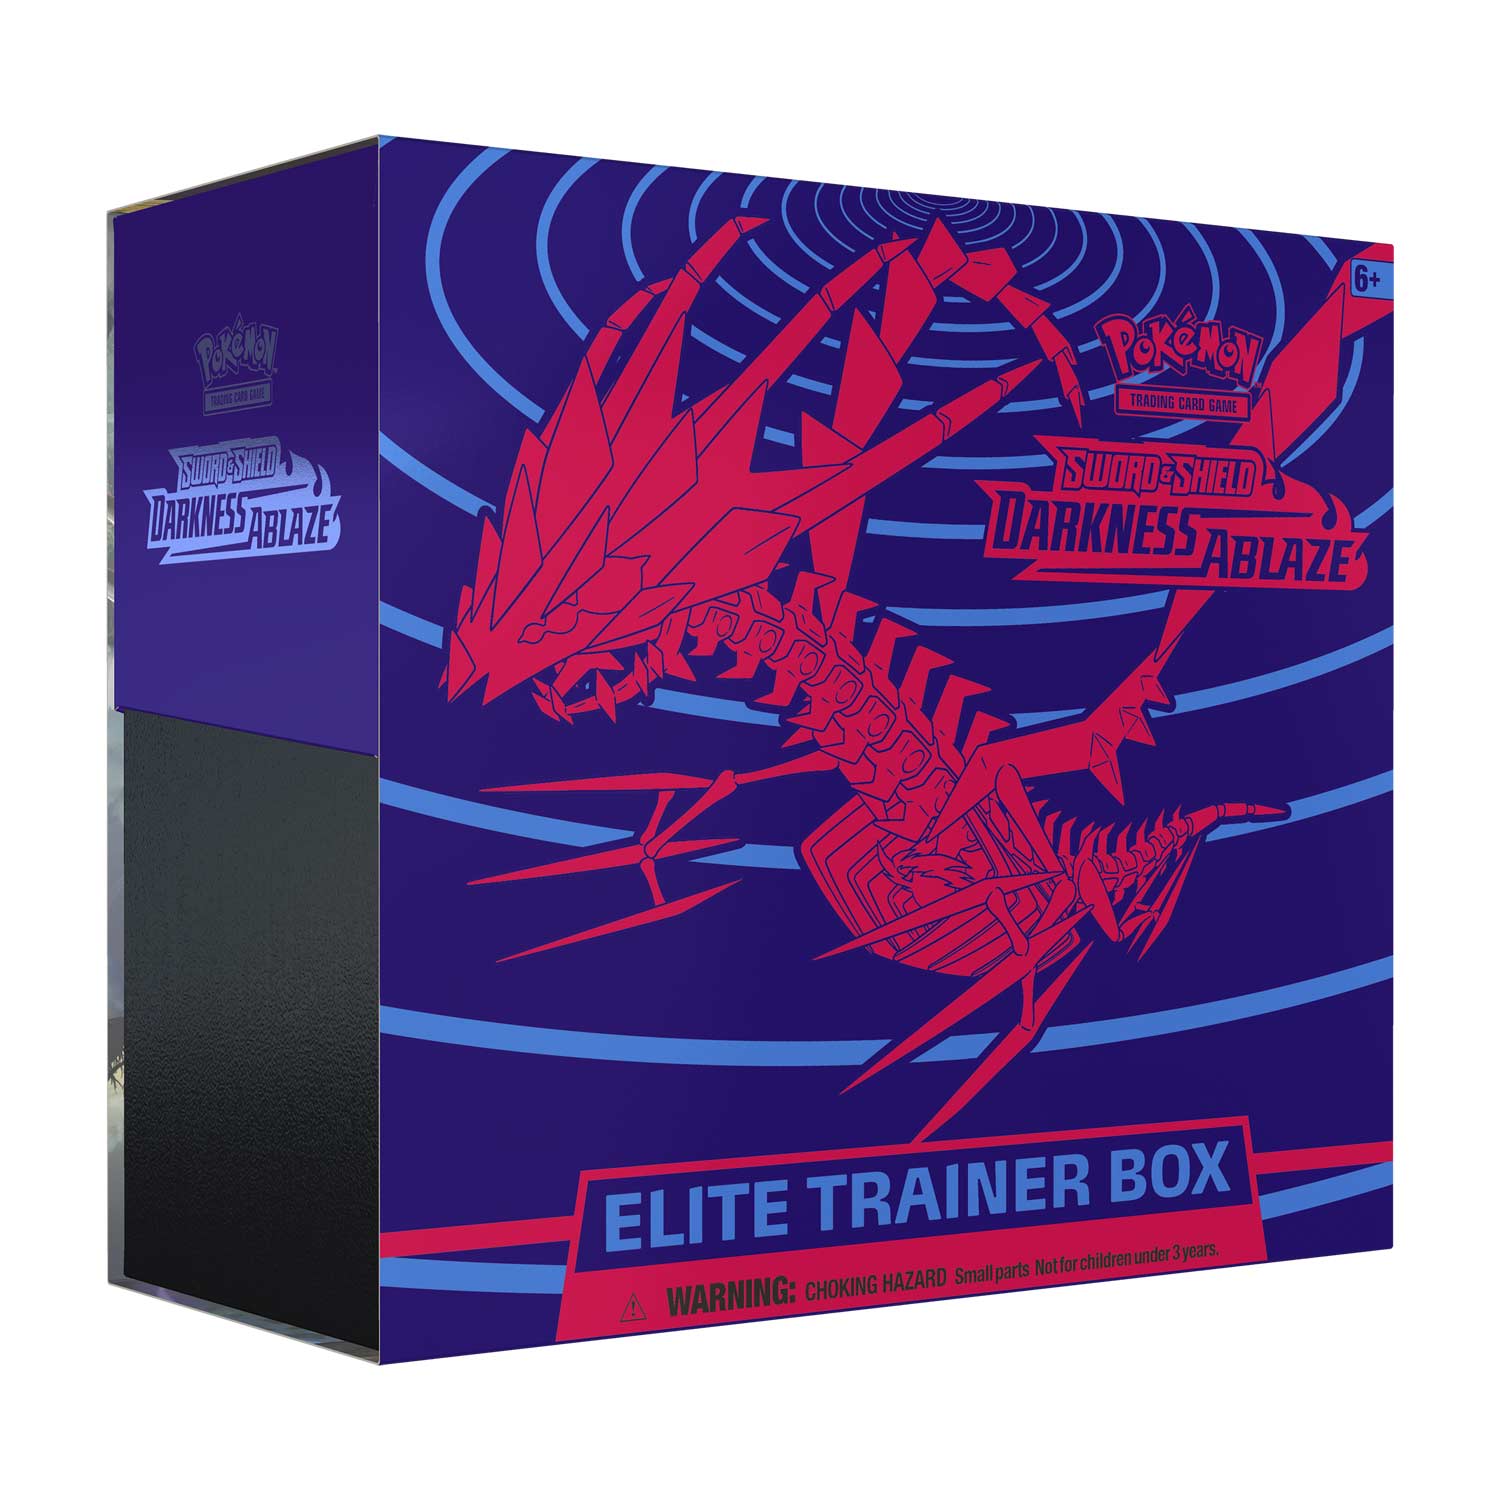 Darkness Ablaze – Elite Trainer Box - Pokemon Kaarten